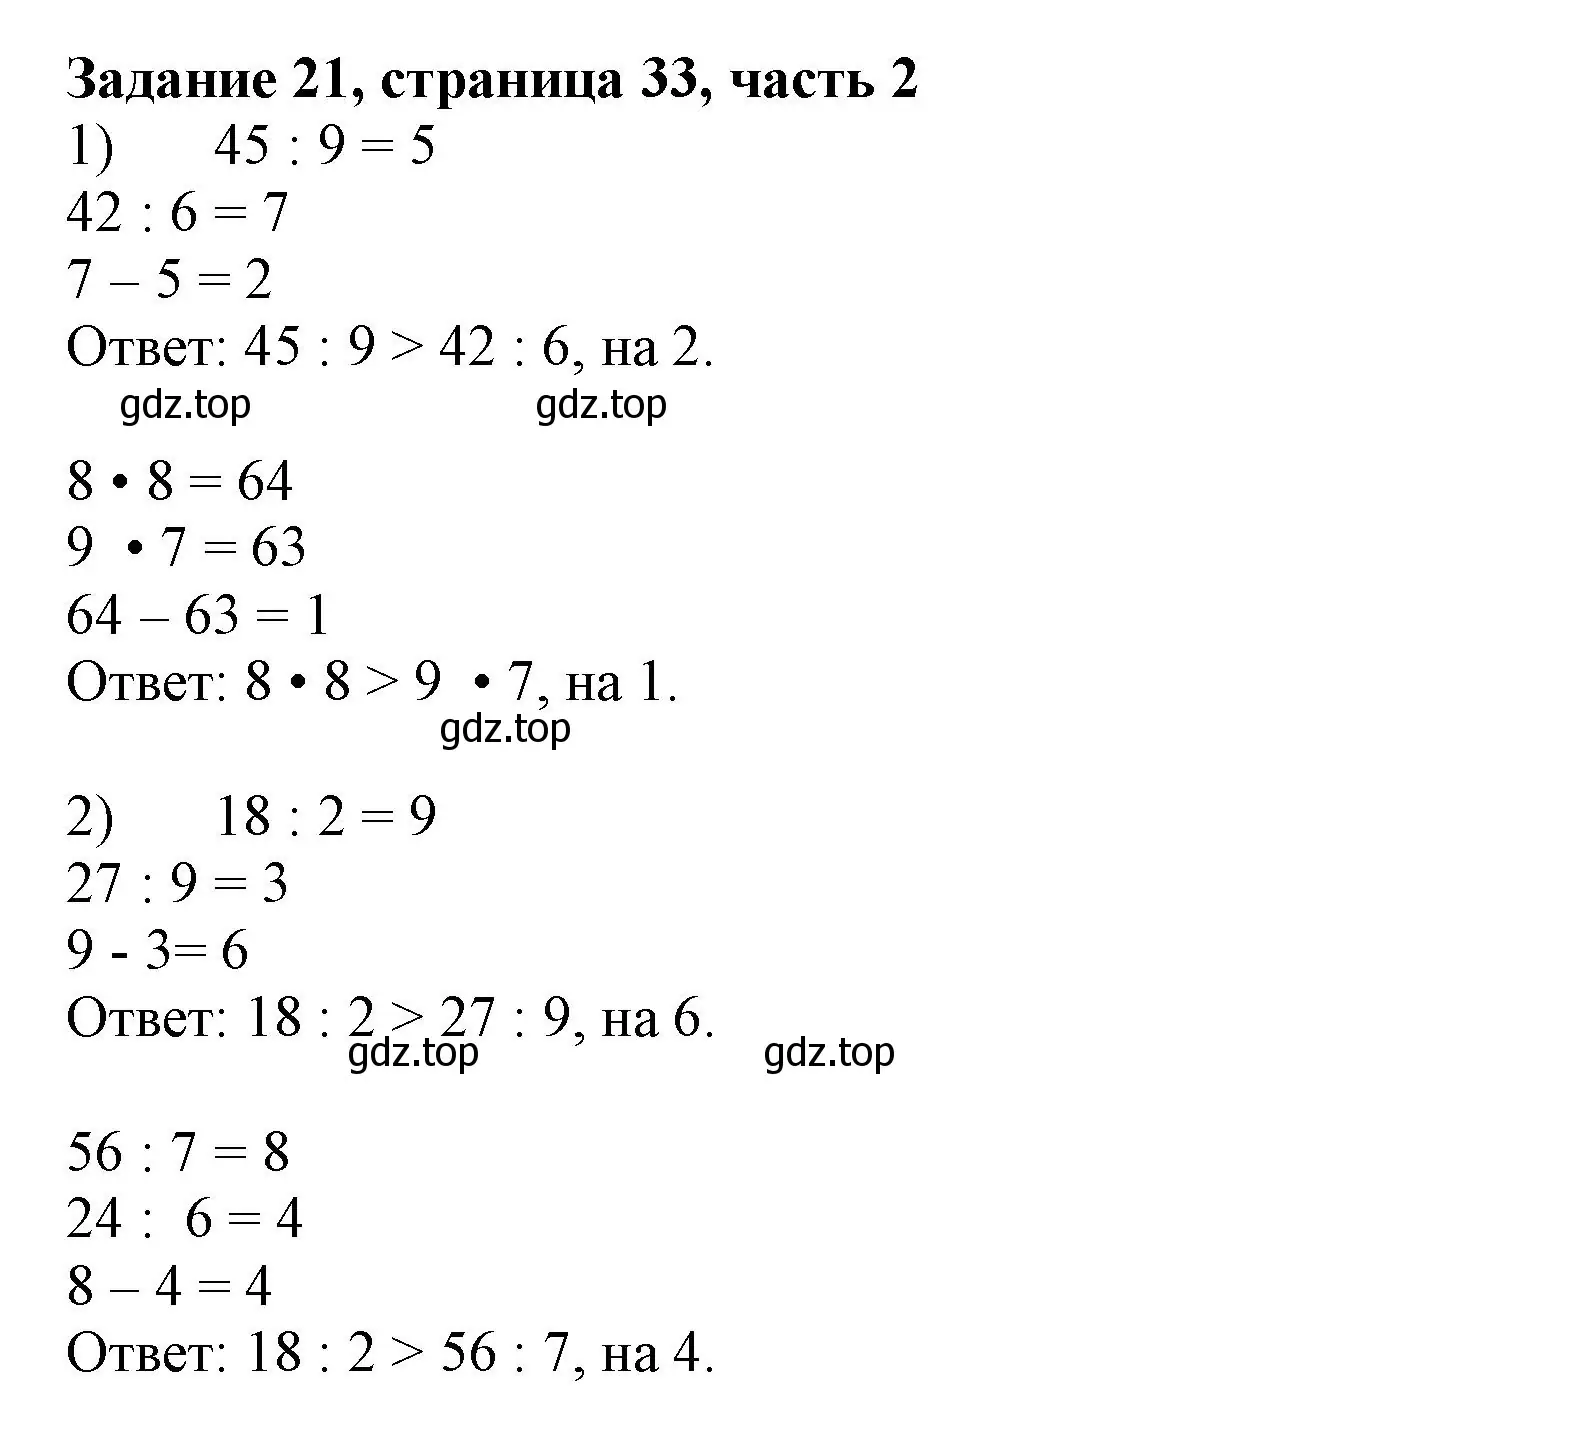 Решение номер 21 (страница 33) гдз по математике 3 класс Моро, Бантова, учебник 2 часть